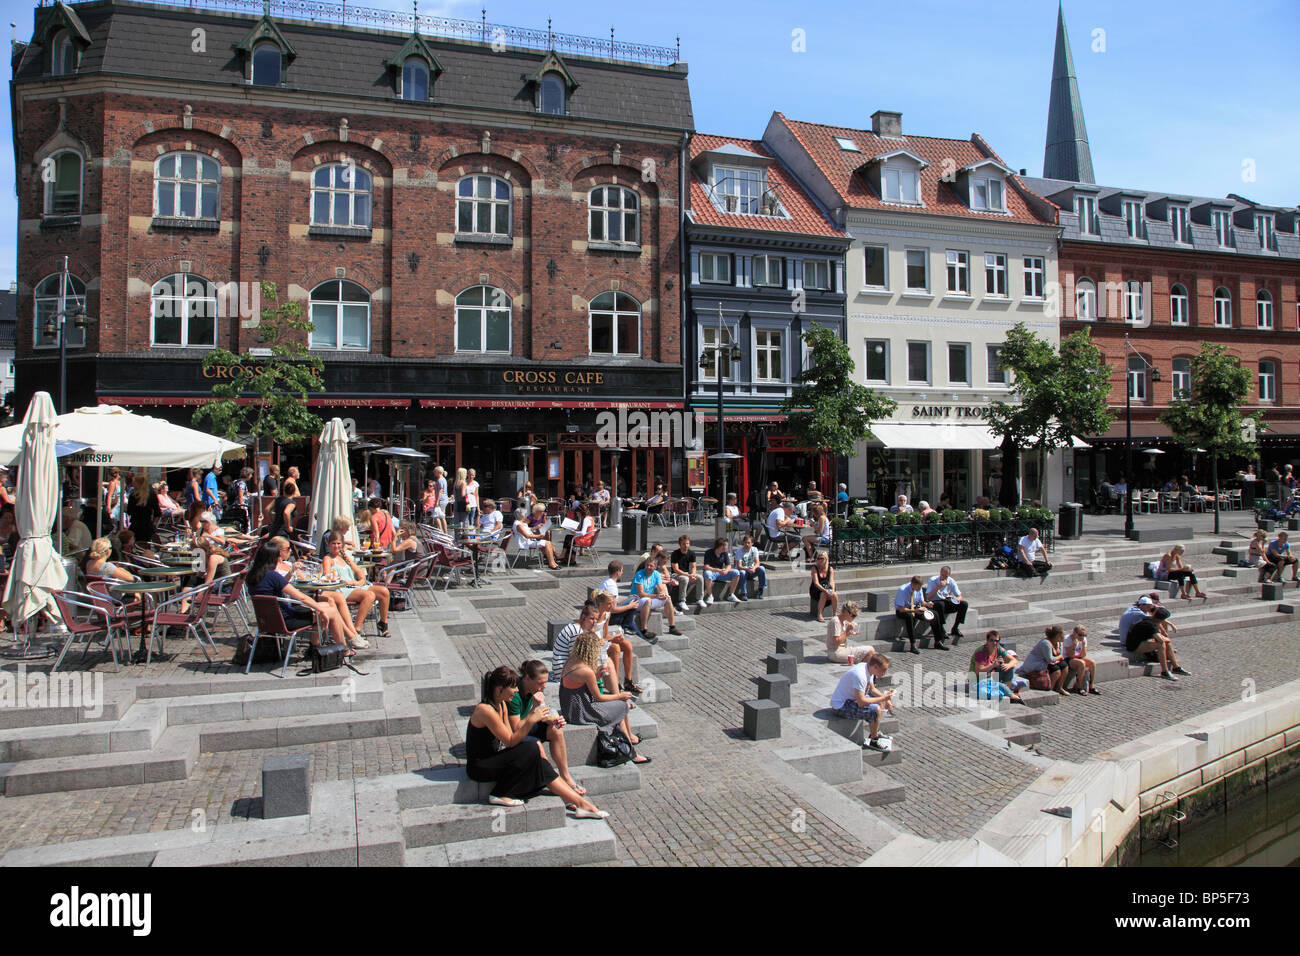 Denmark, Jutland, Arhus, Aboulevarden, cafe, people, leisure, Stock Photo